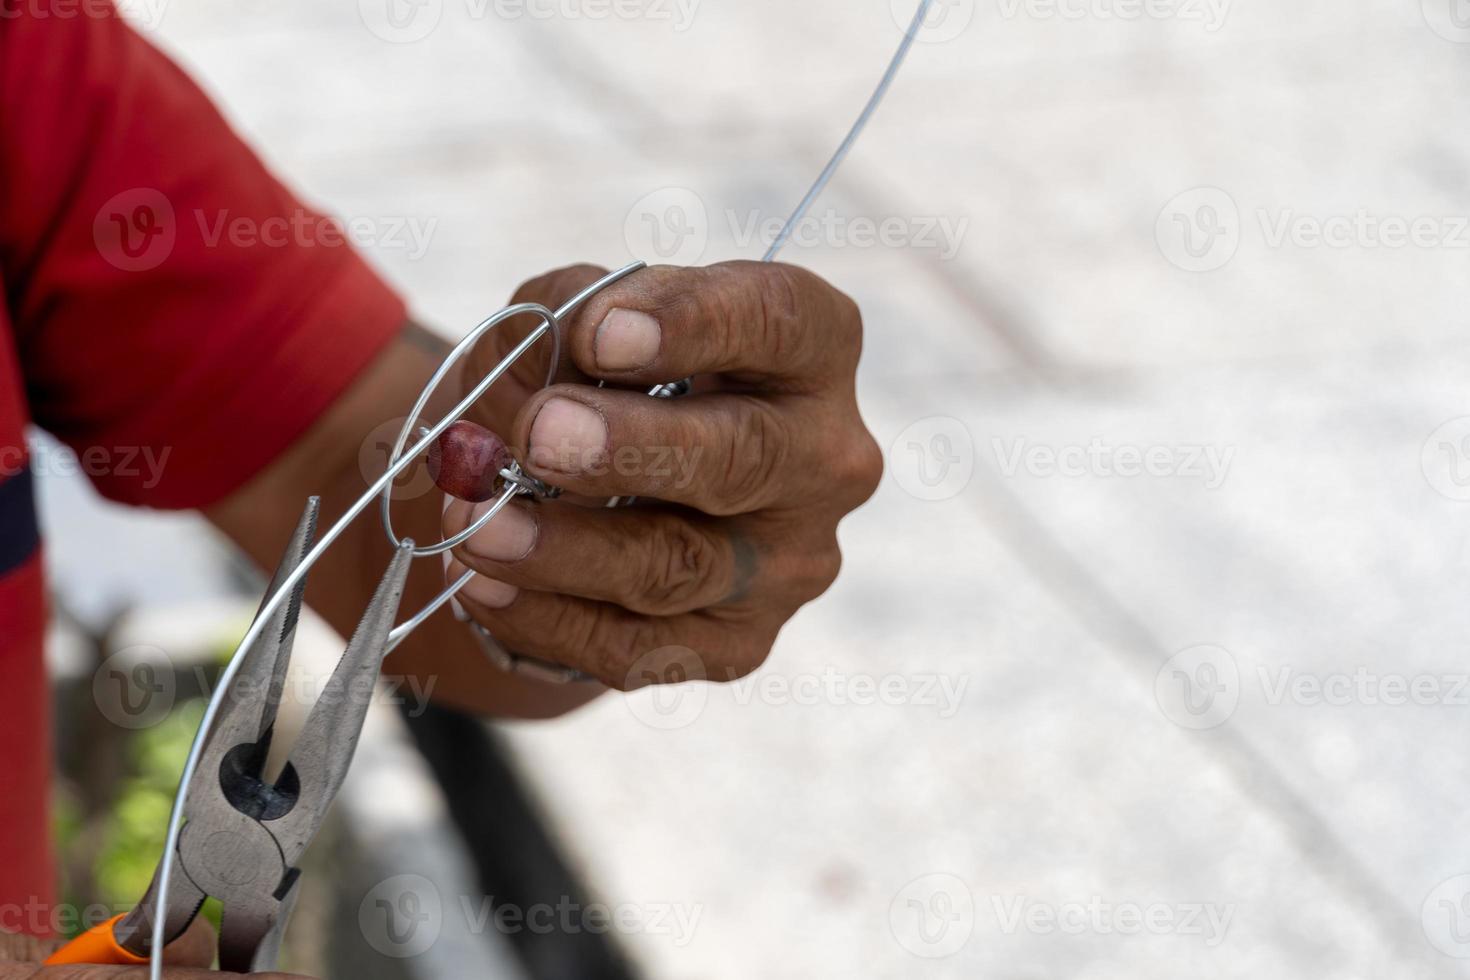 Anciano artesano haciendo figurillas de metal en la calle, México América Latina foto